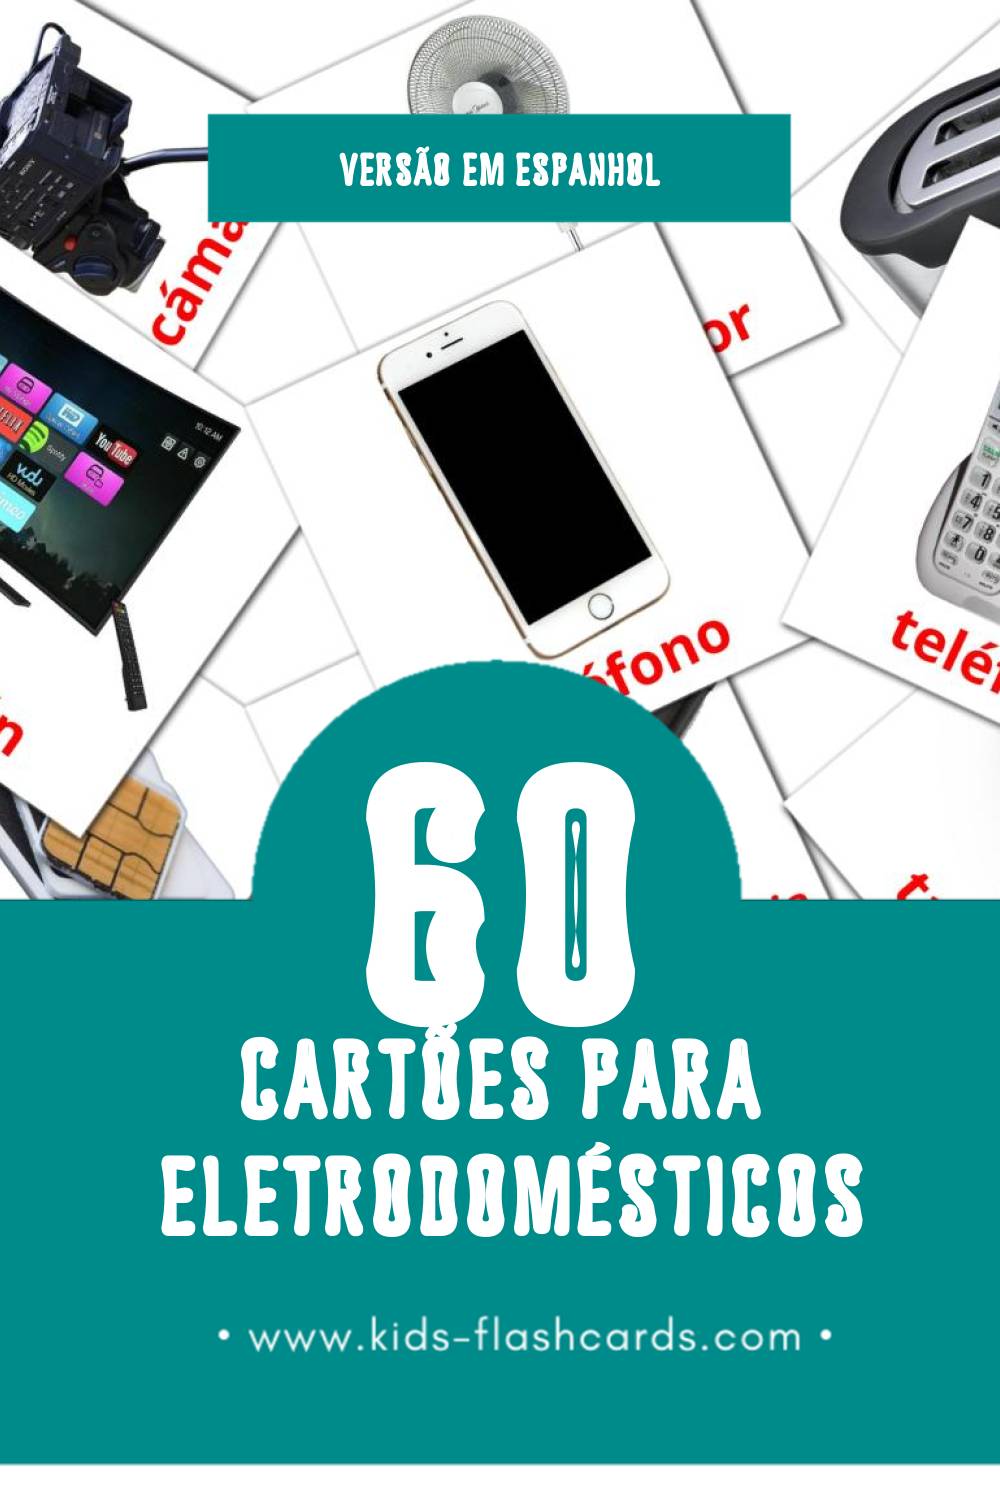 Flashcards de Aparatos domésticos Visuais para Toddlers (61 cartões em Espanhol)